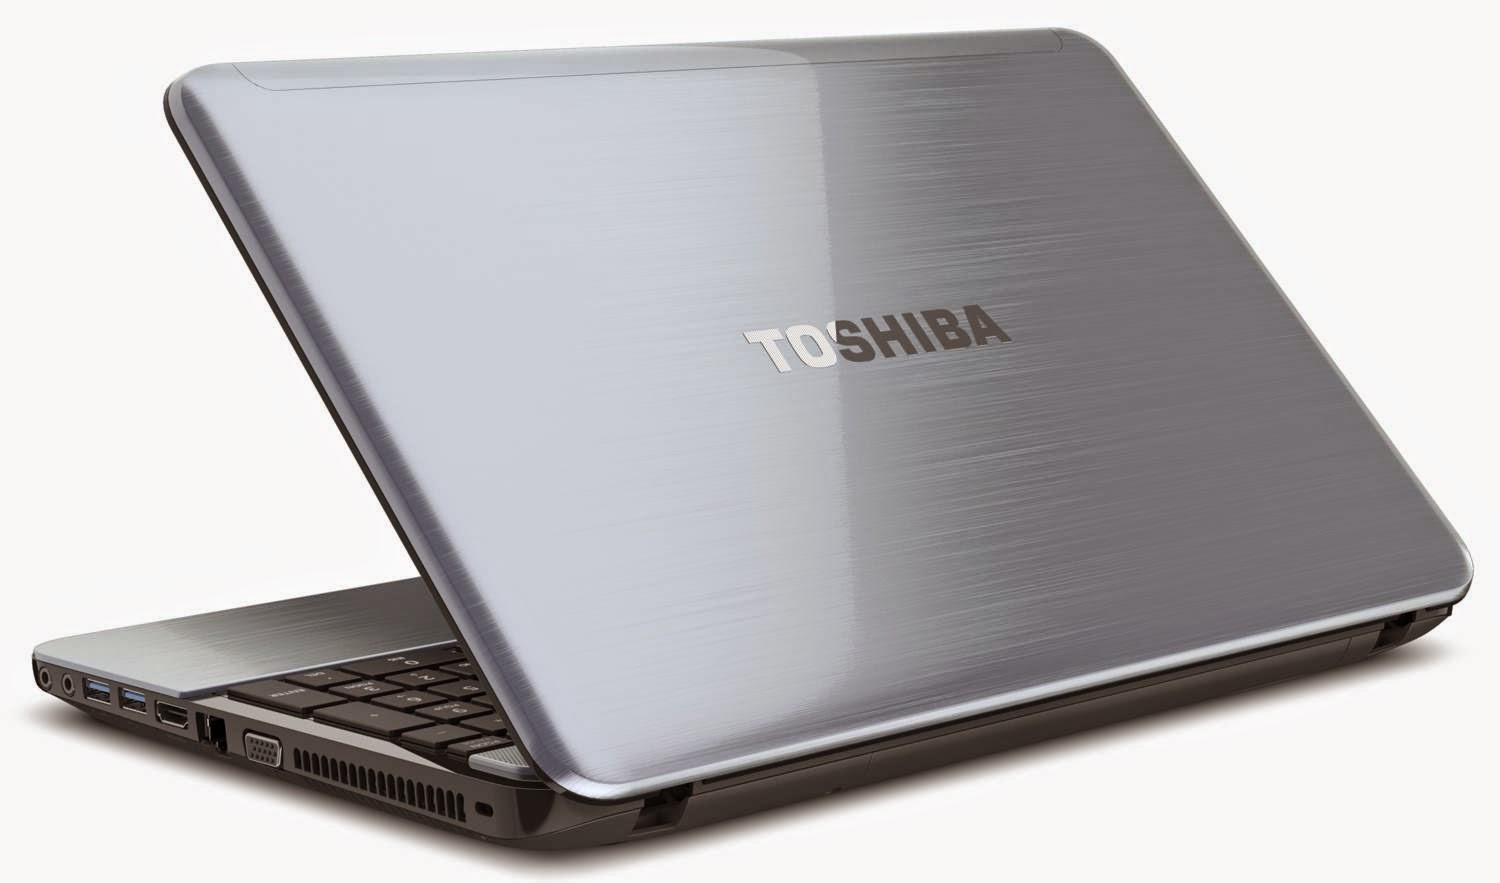 Harga Laptop Terbaru Toshiba Maret 2015  Kumpulan Harga 